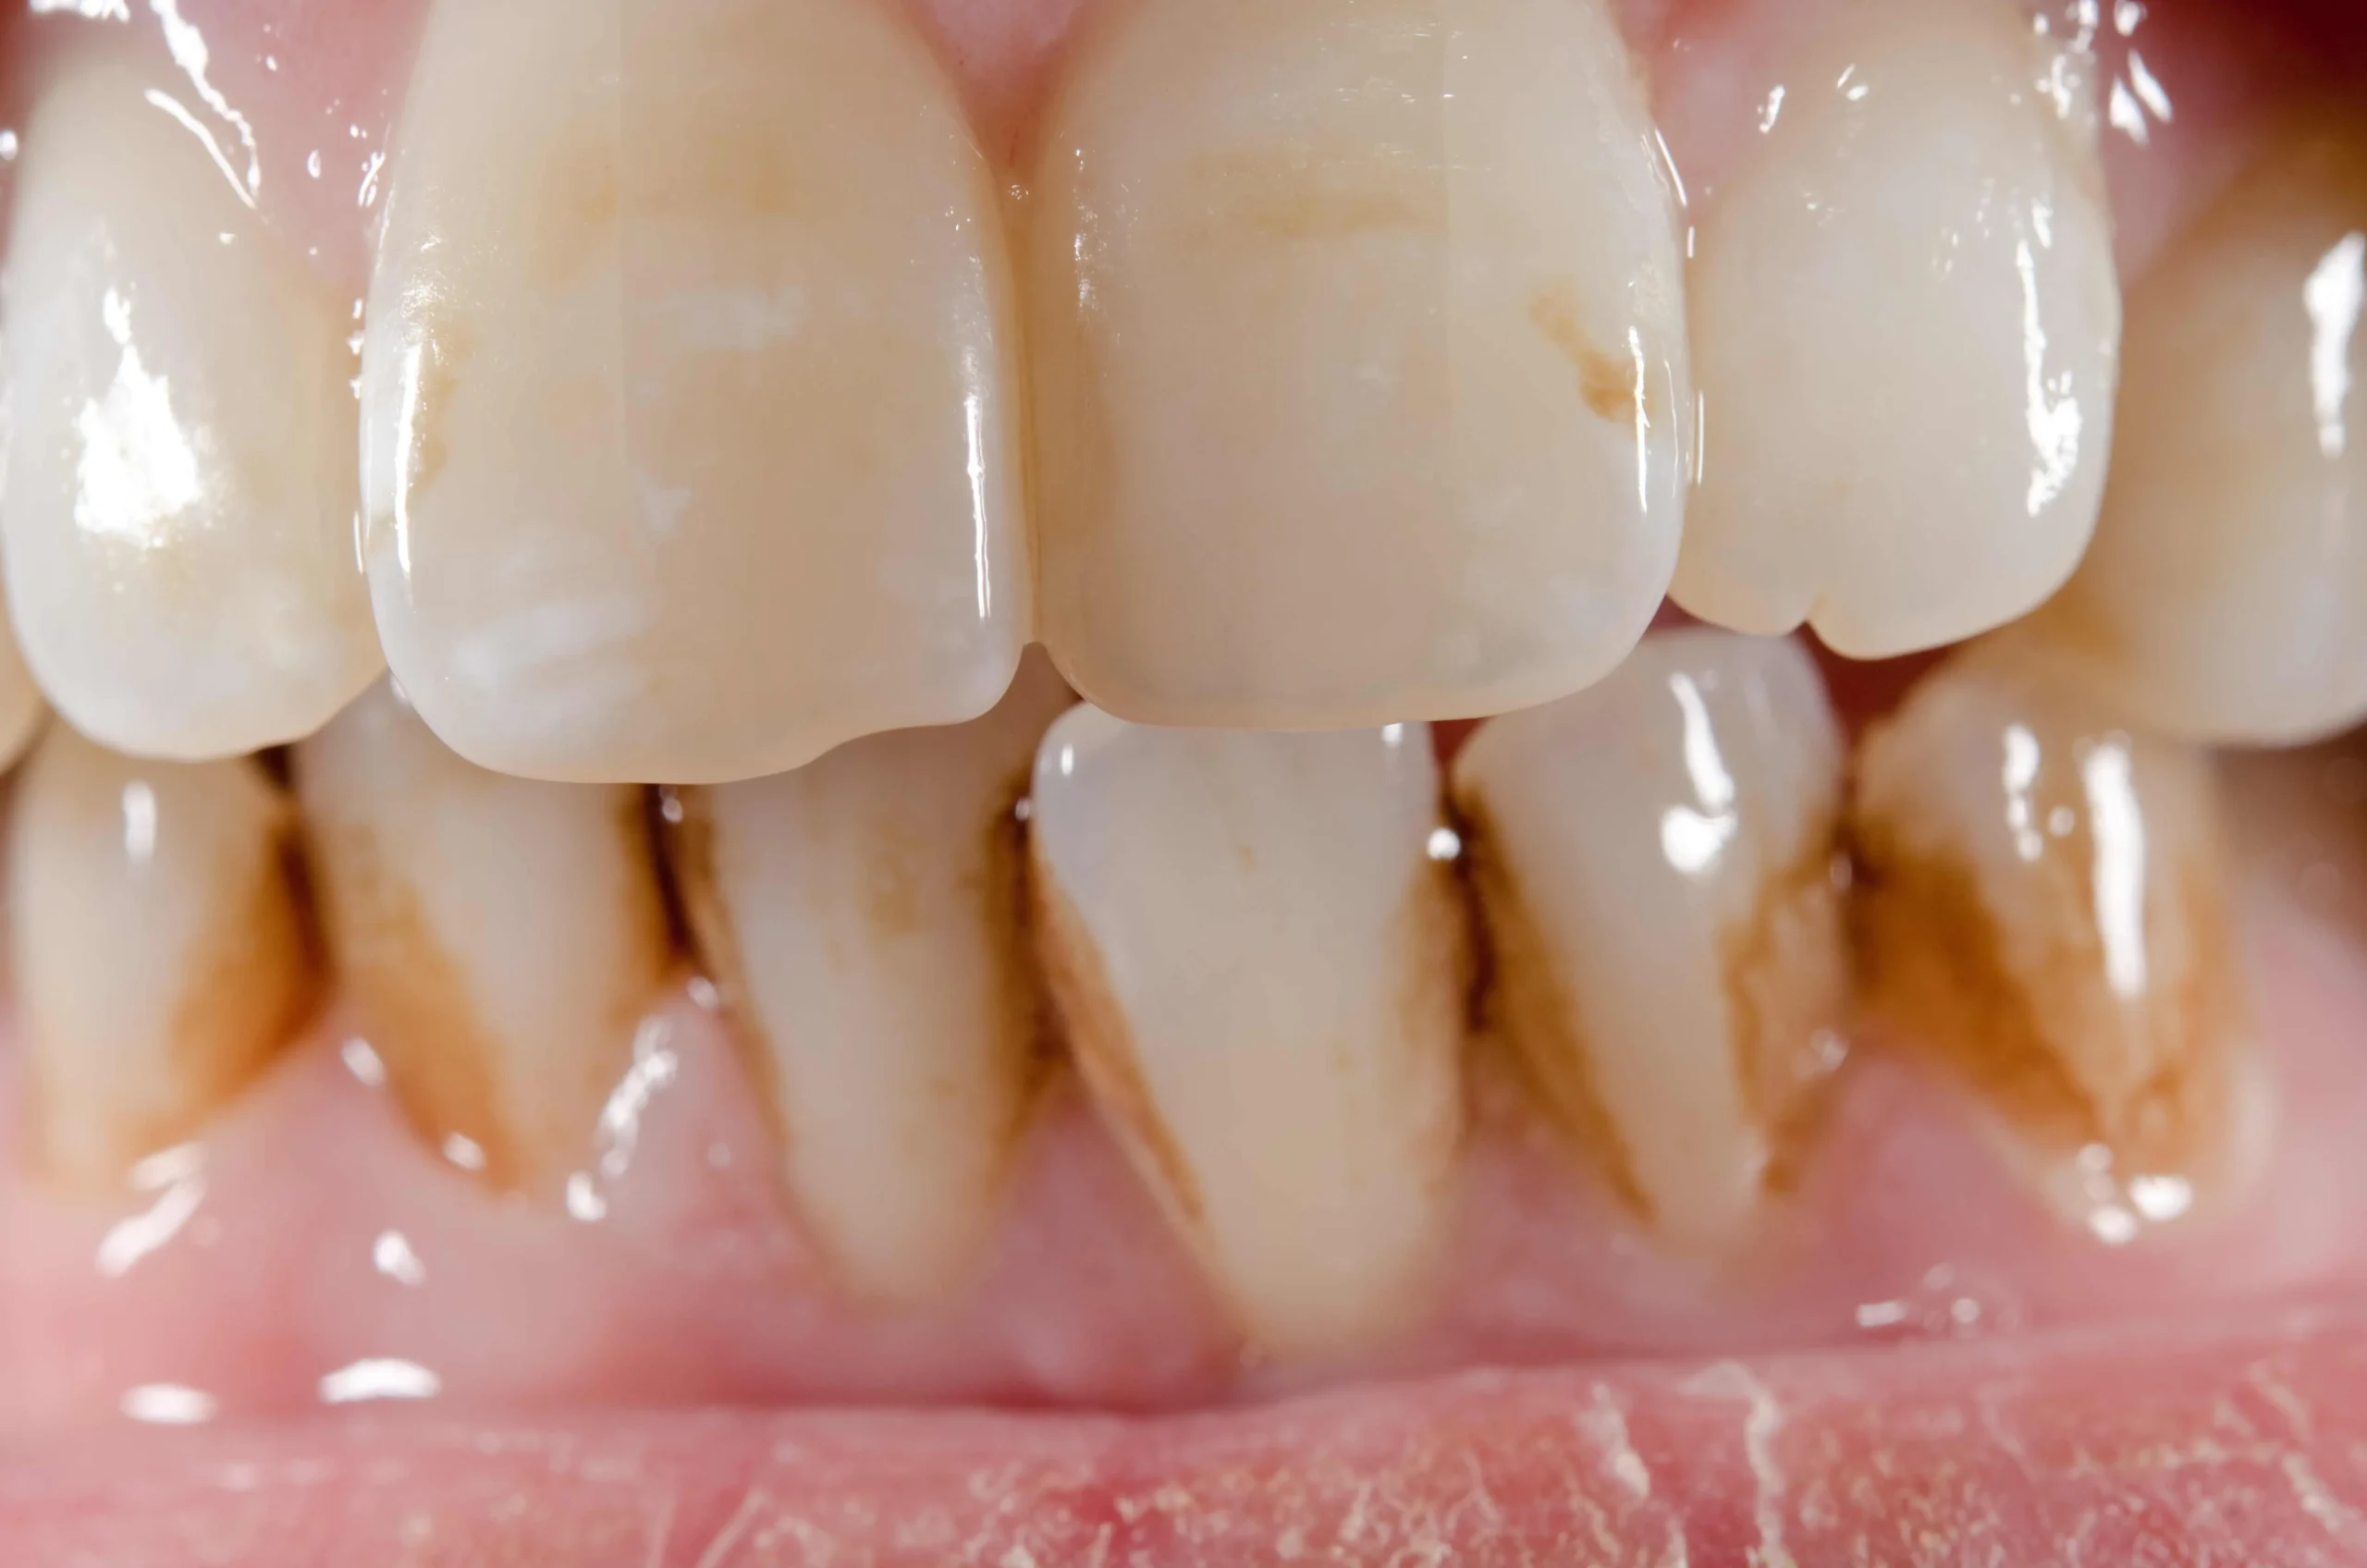 por que se manchan los dientes - Por qué salen manchas cafés en los dientes